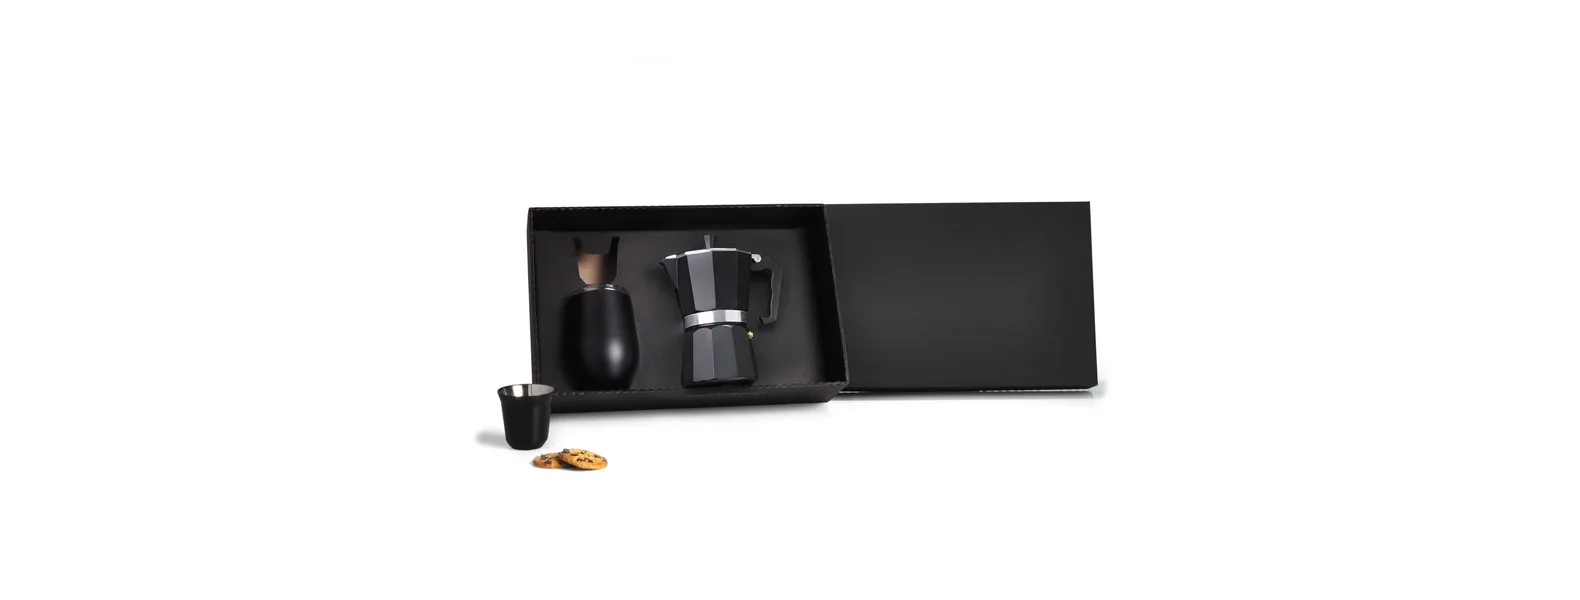 Kit para café. Conta com cafeteira prensa francesa e dois copos para café em aço inox preto, um de 80ml e outro de 340ml com tampa.